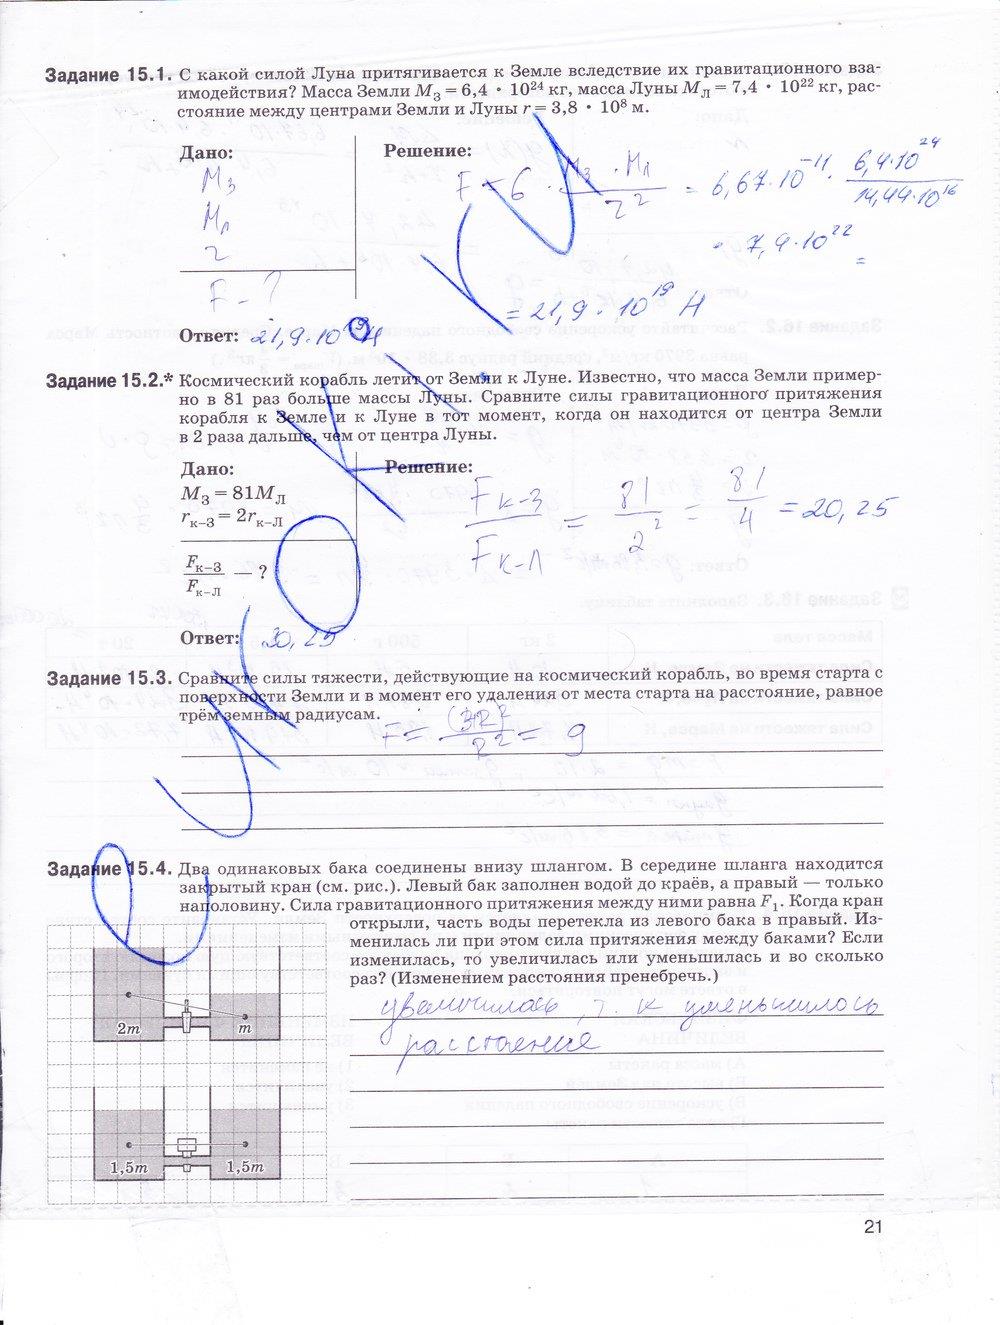 гдз 9 класс рабочая тетрадь страница 21 физика Гутник, Власова